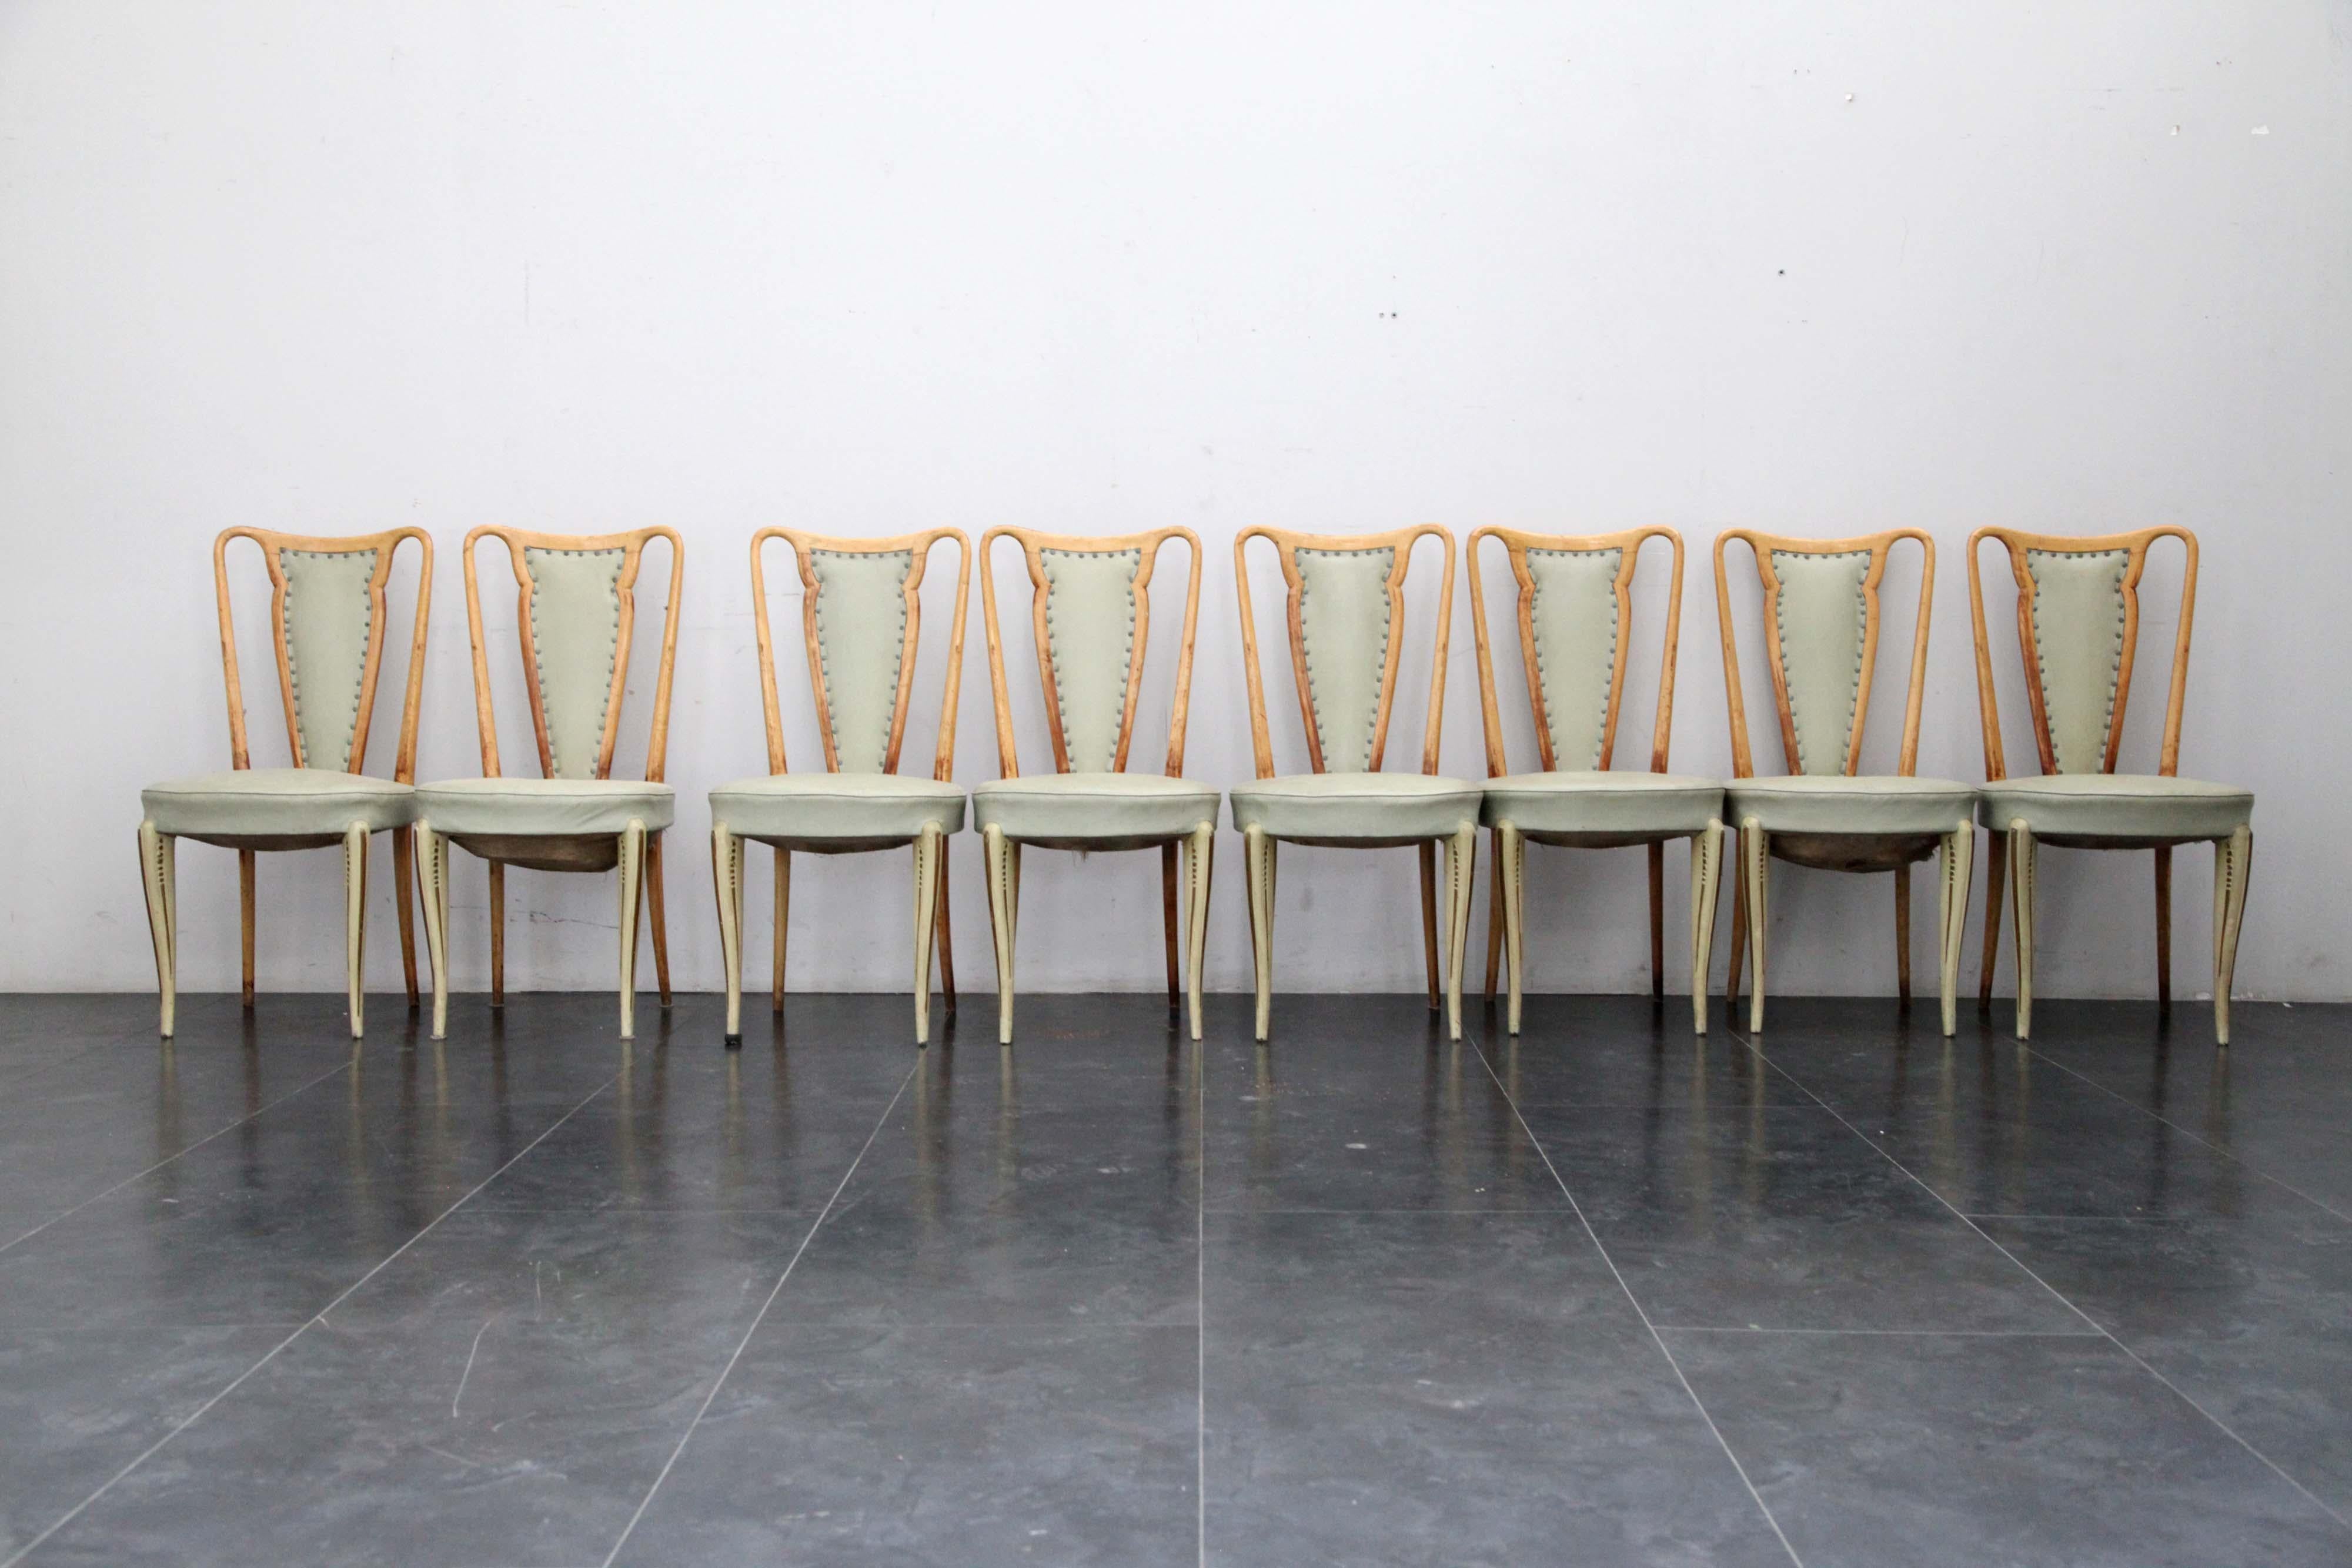 Chaise en érable avec cuir vert aigue-marine, pour la Permanente Canù, le design peut être lié à Guglielmo Ulrich.
Ensemble de 8 chaises.